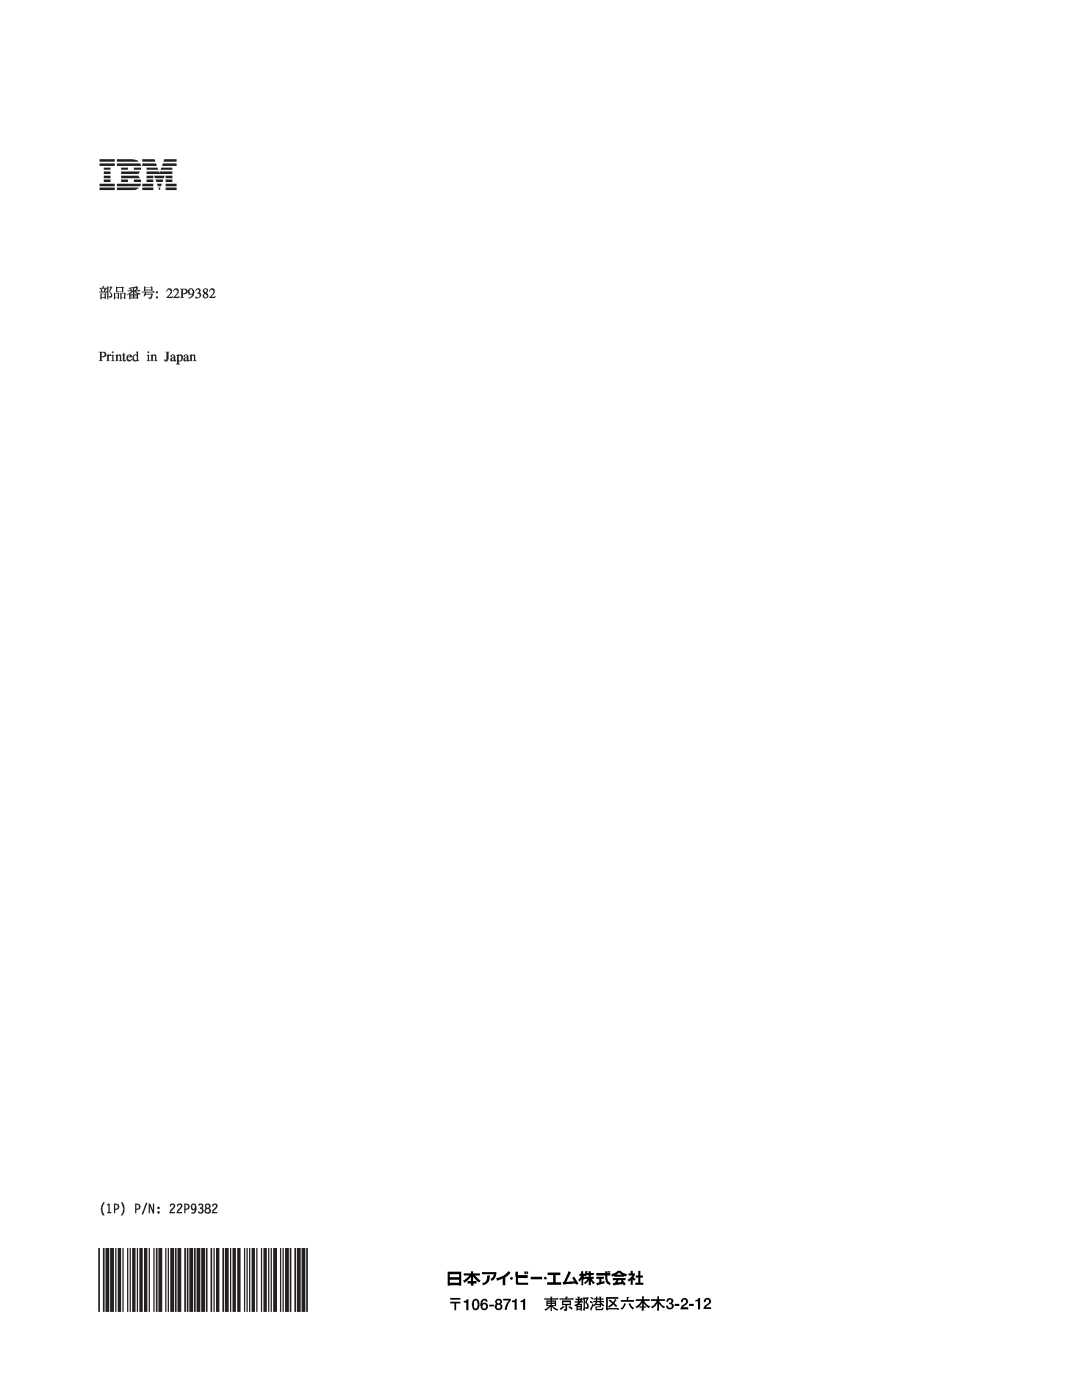 IBM M400 manual 部品番号 22P9382 Printed in Japan, 1P P/N 22P9382 